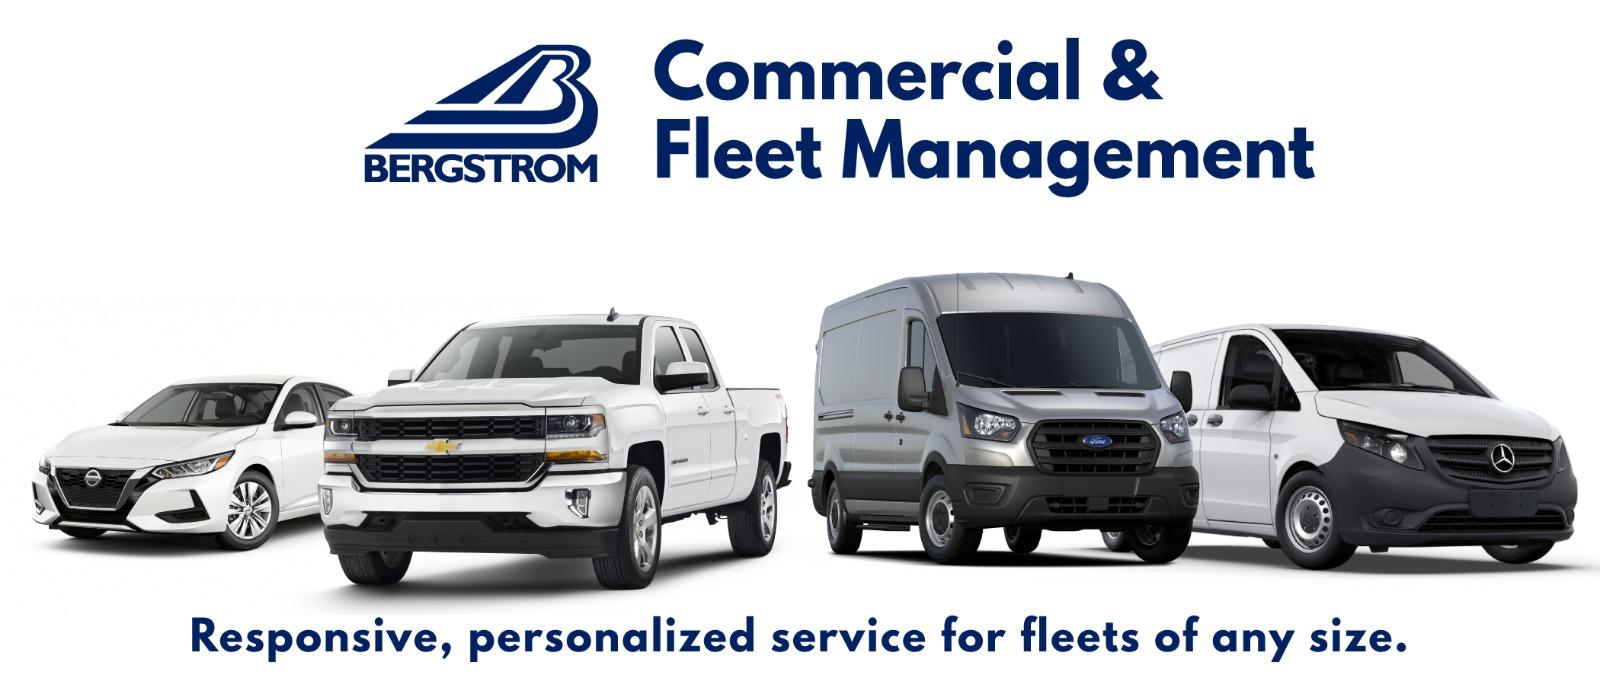 Bergstrom Commercial & Fleet Management